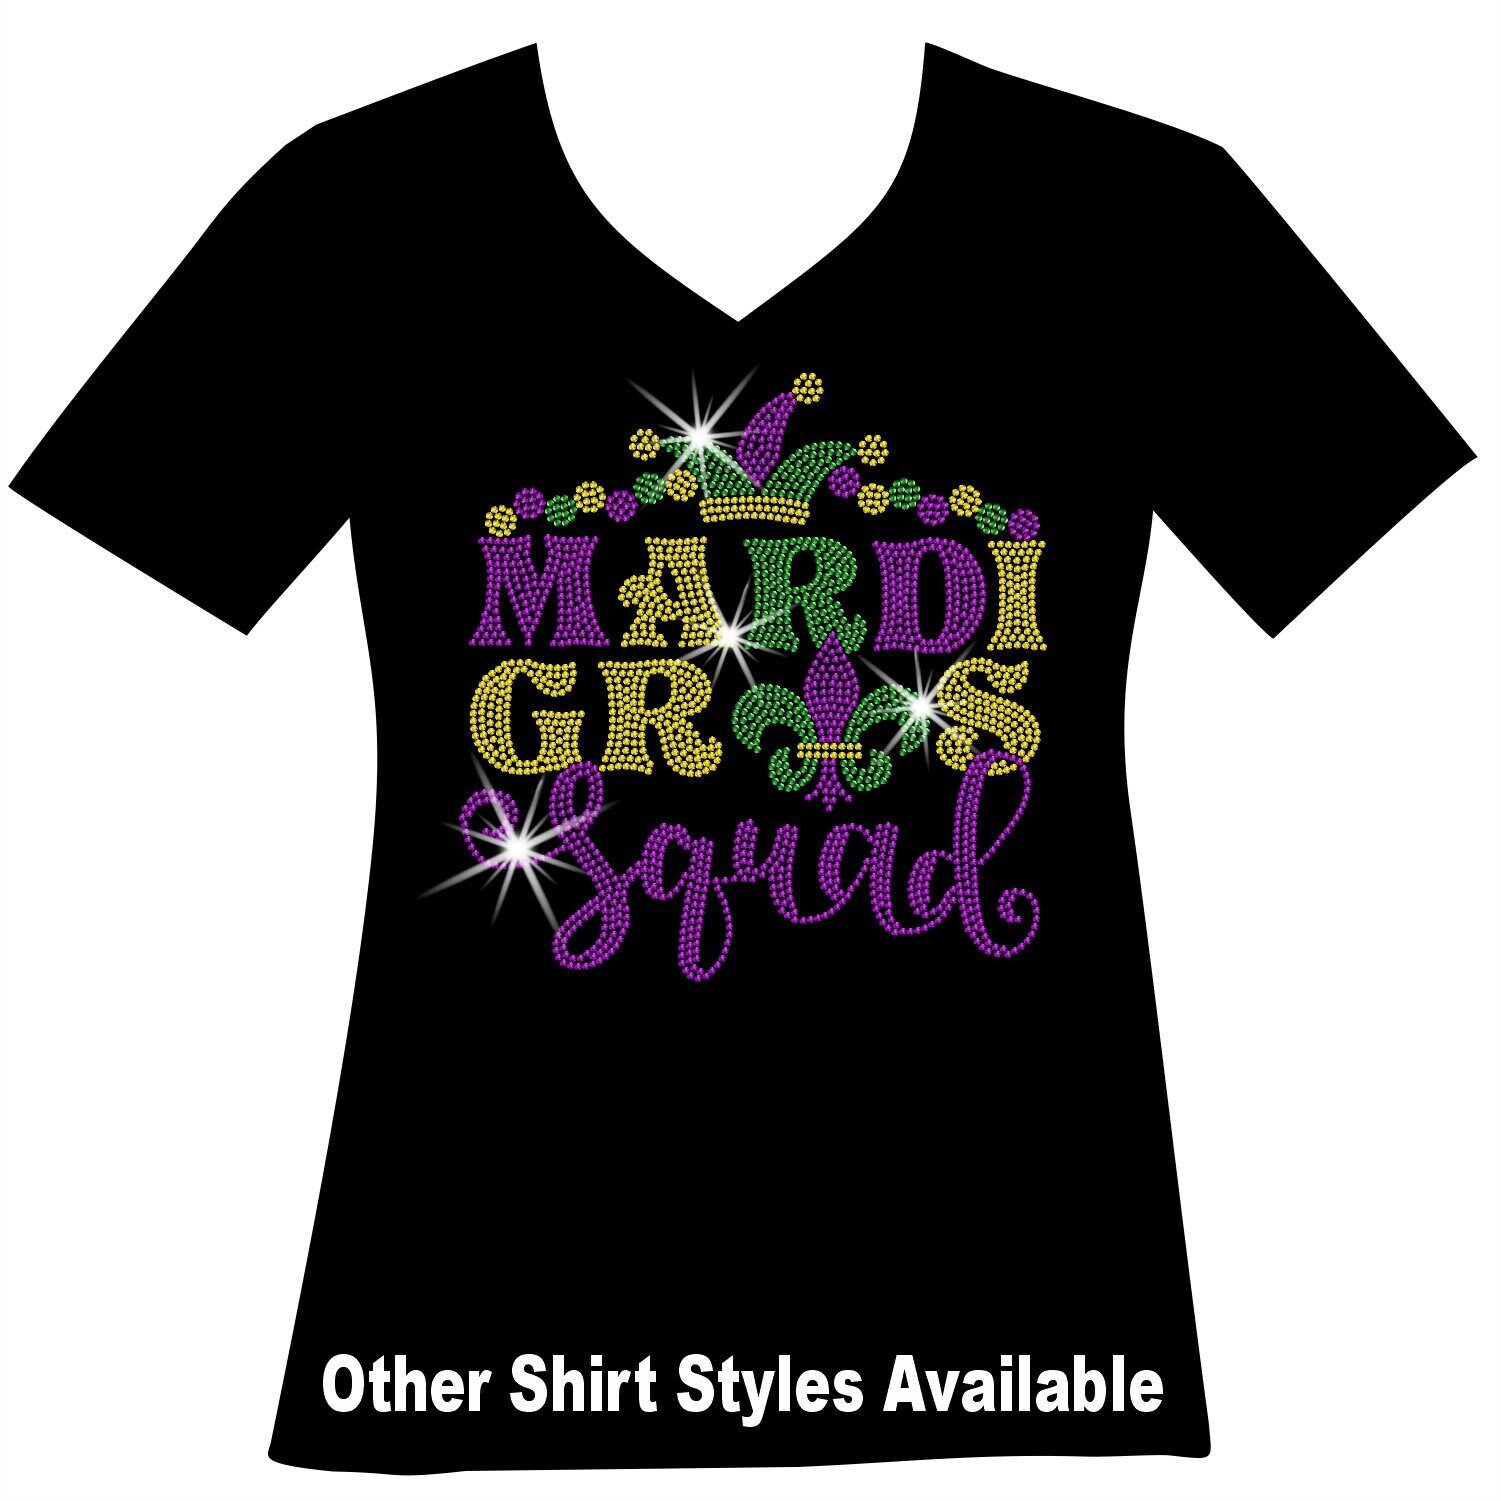 Mardi Gras Krewe Louisiana Beads Fun Party Tuesday Women's T-Shirt